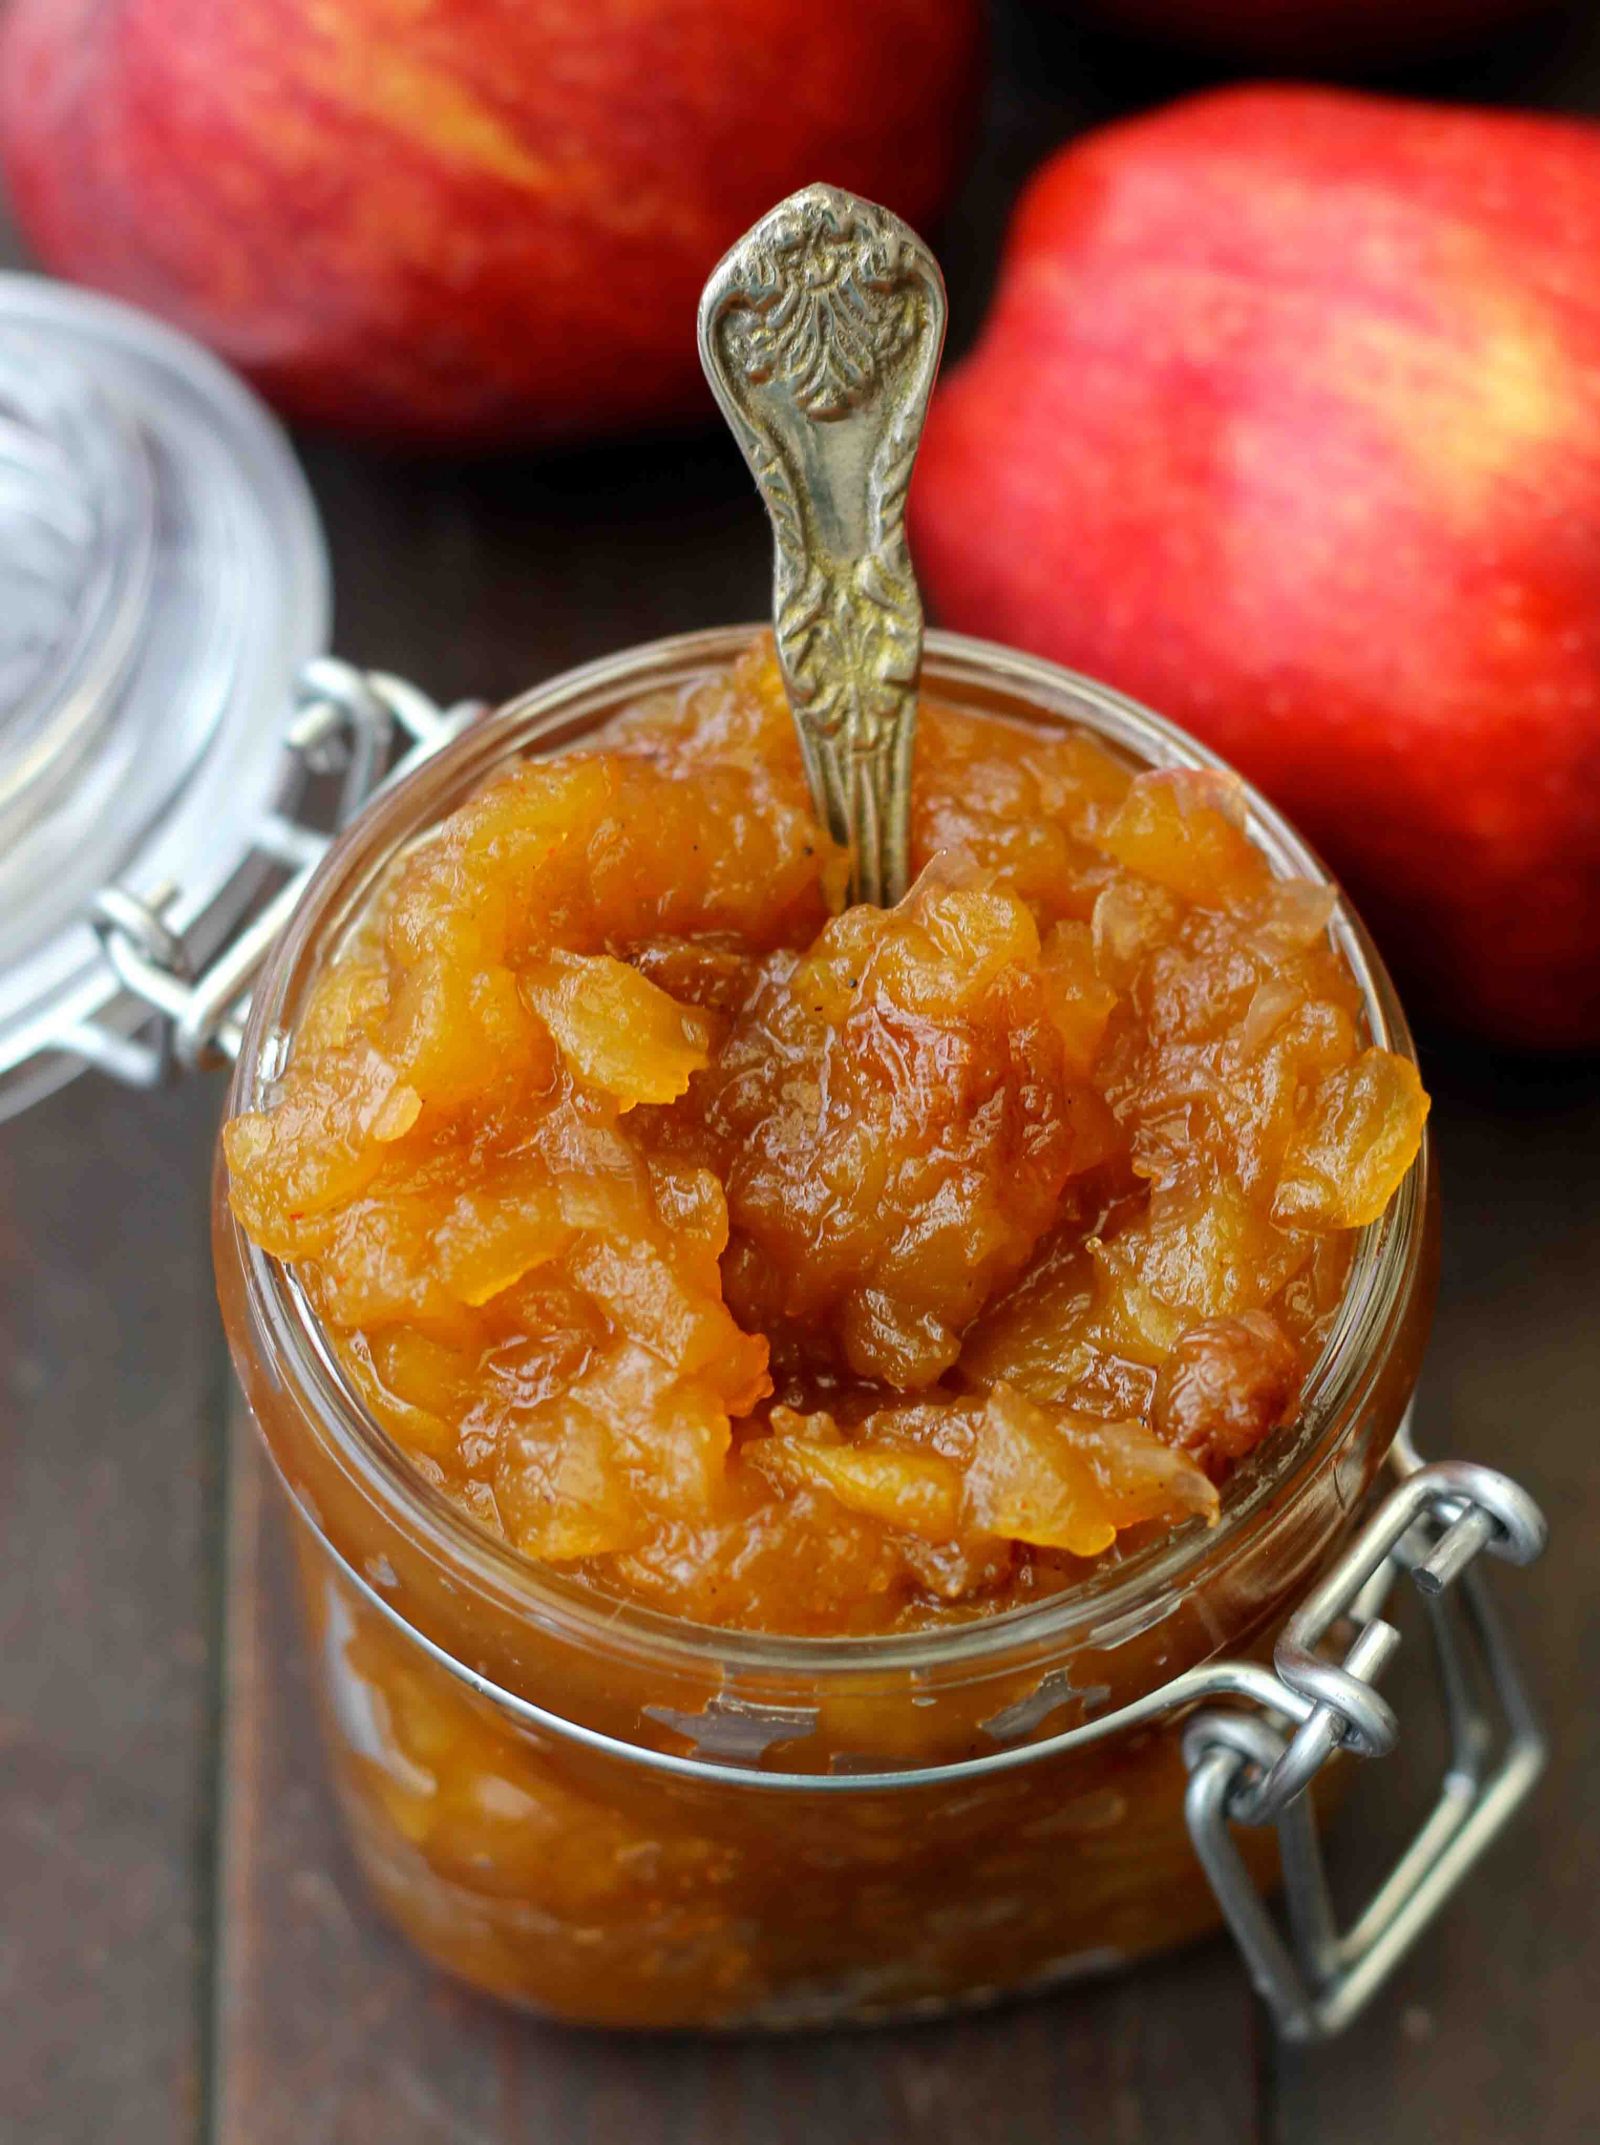 सेब और किशमिश की चटनी रेसिपी - Apple And Raisin Chutney Recipe